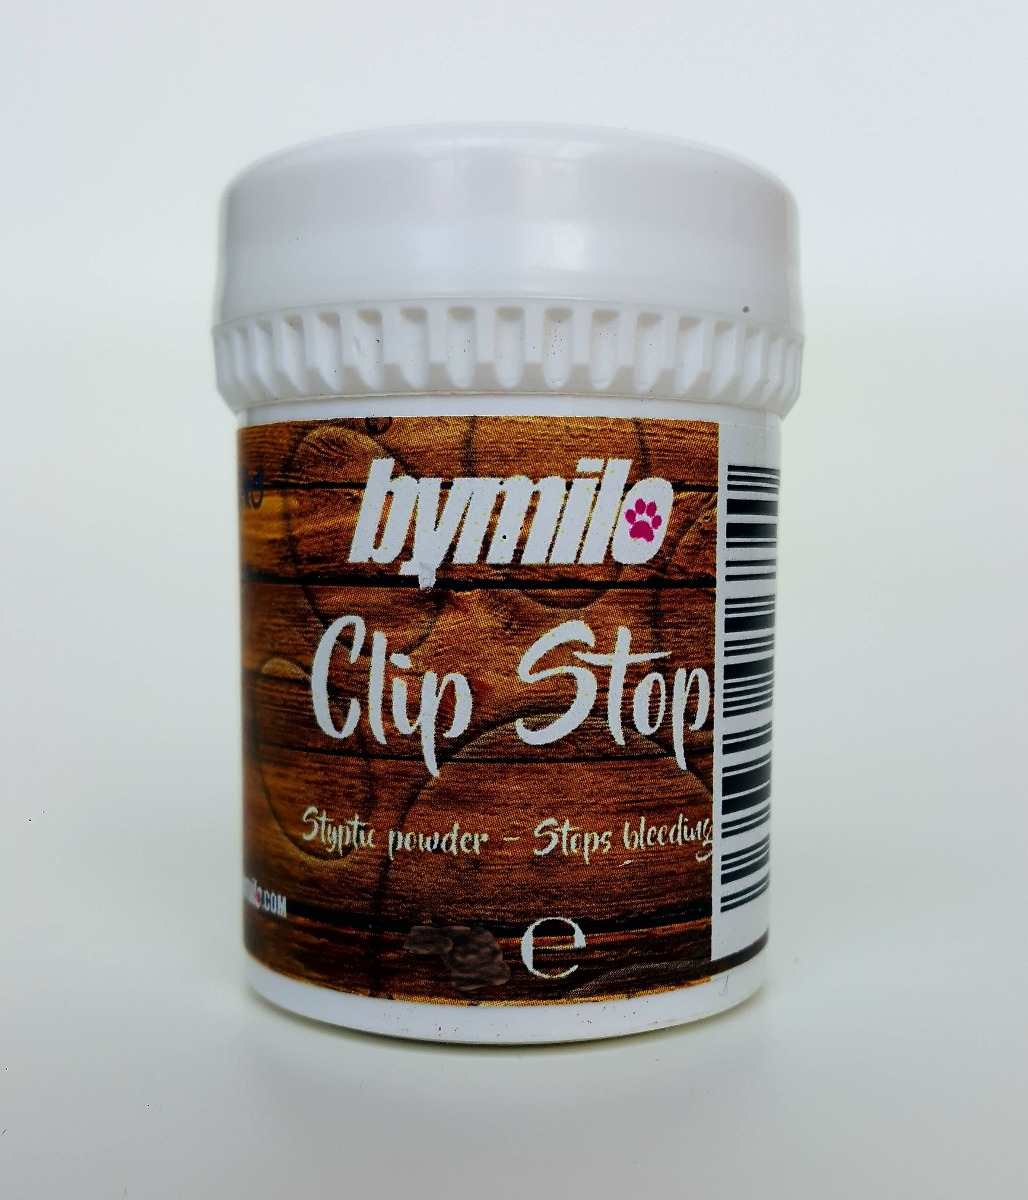 7: Bymilo Clip Stop pulver. 15 g.